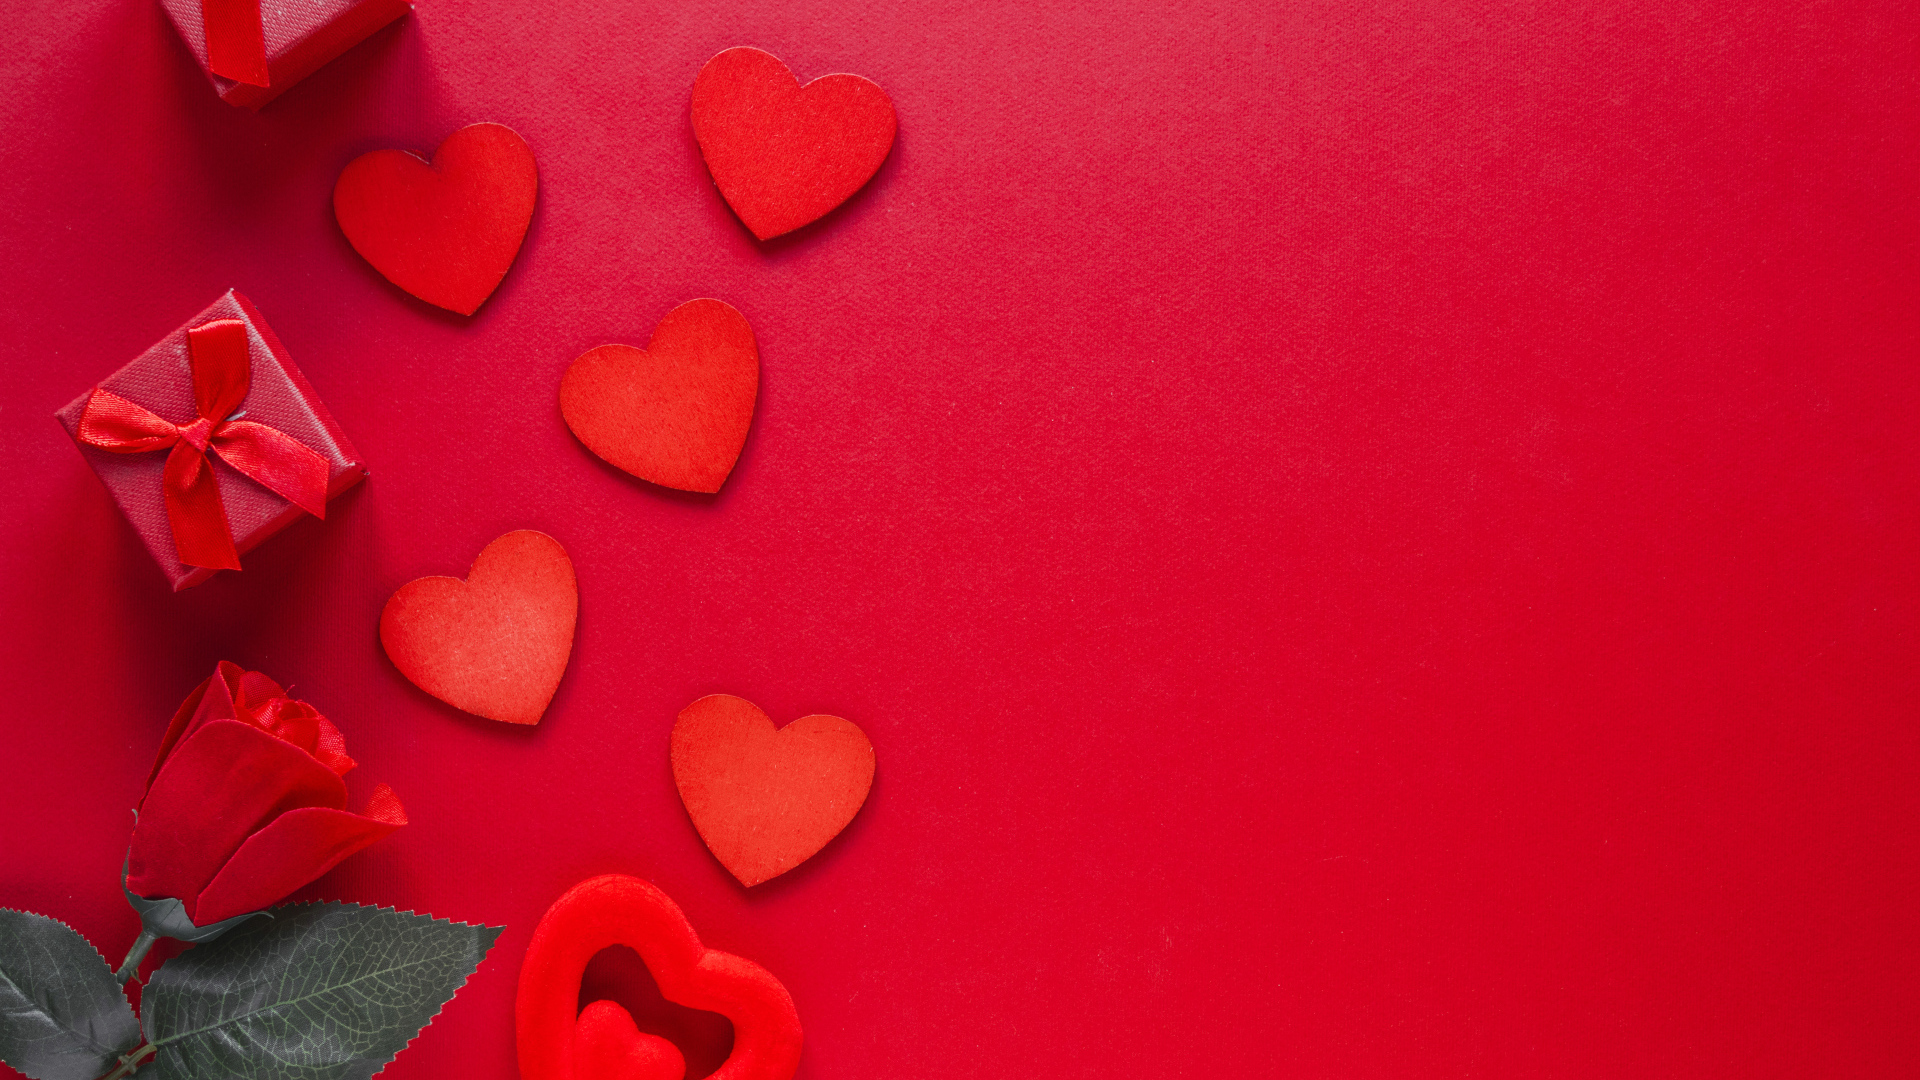 Бумажные сердечки с подарком и розой на красном фоне